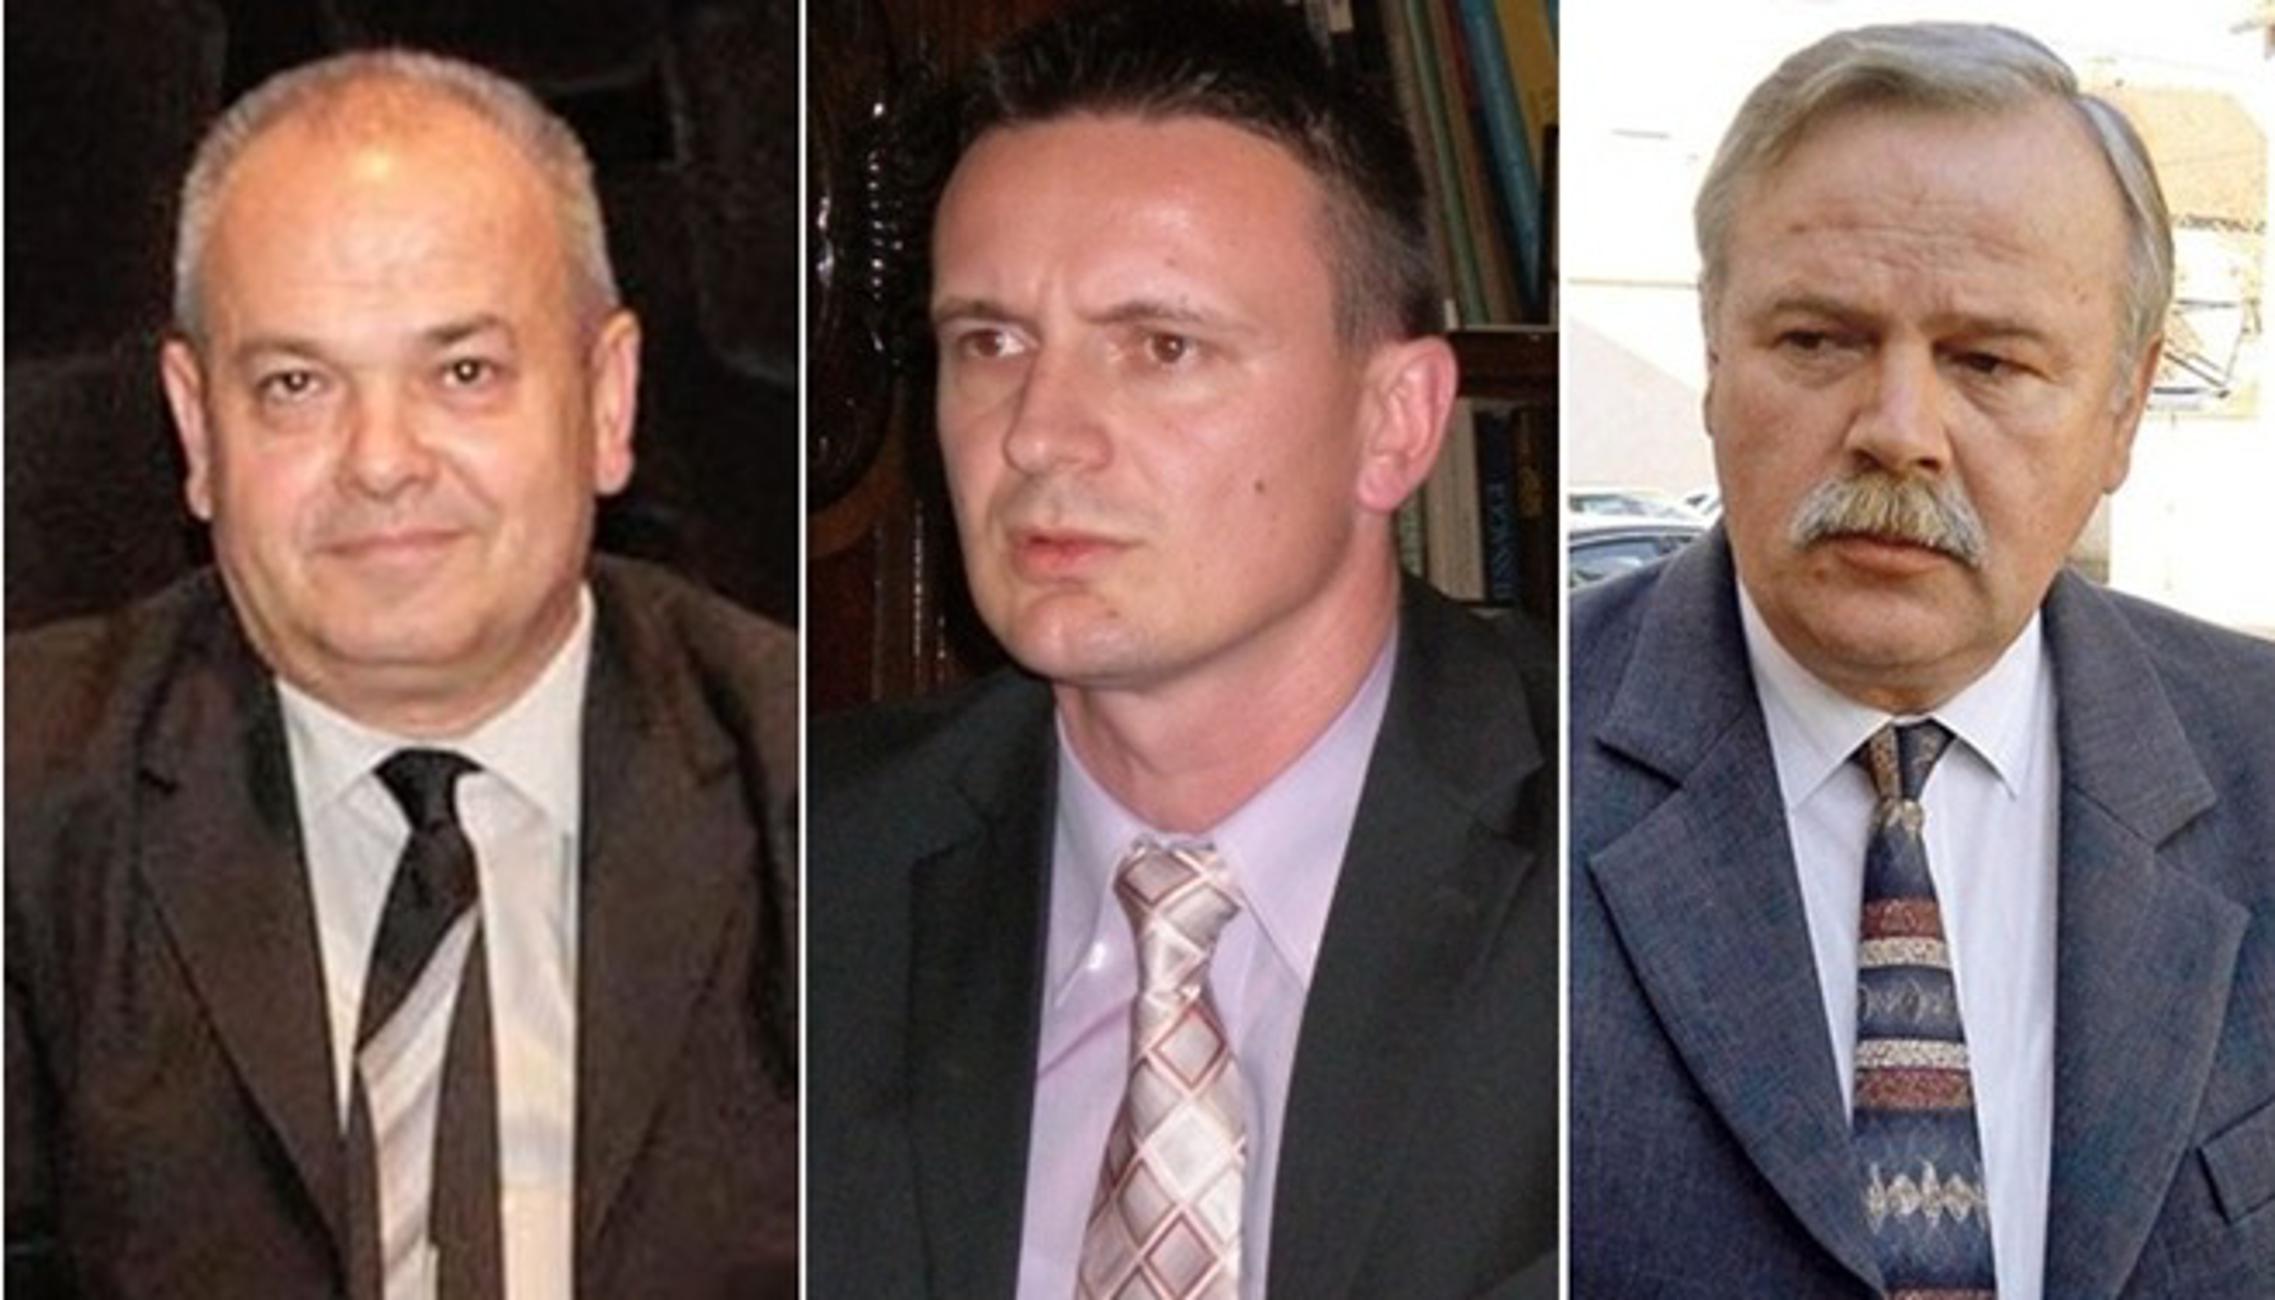 Mirko Duspara, Danijel Marušić, Josip Vuković